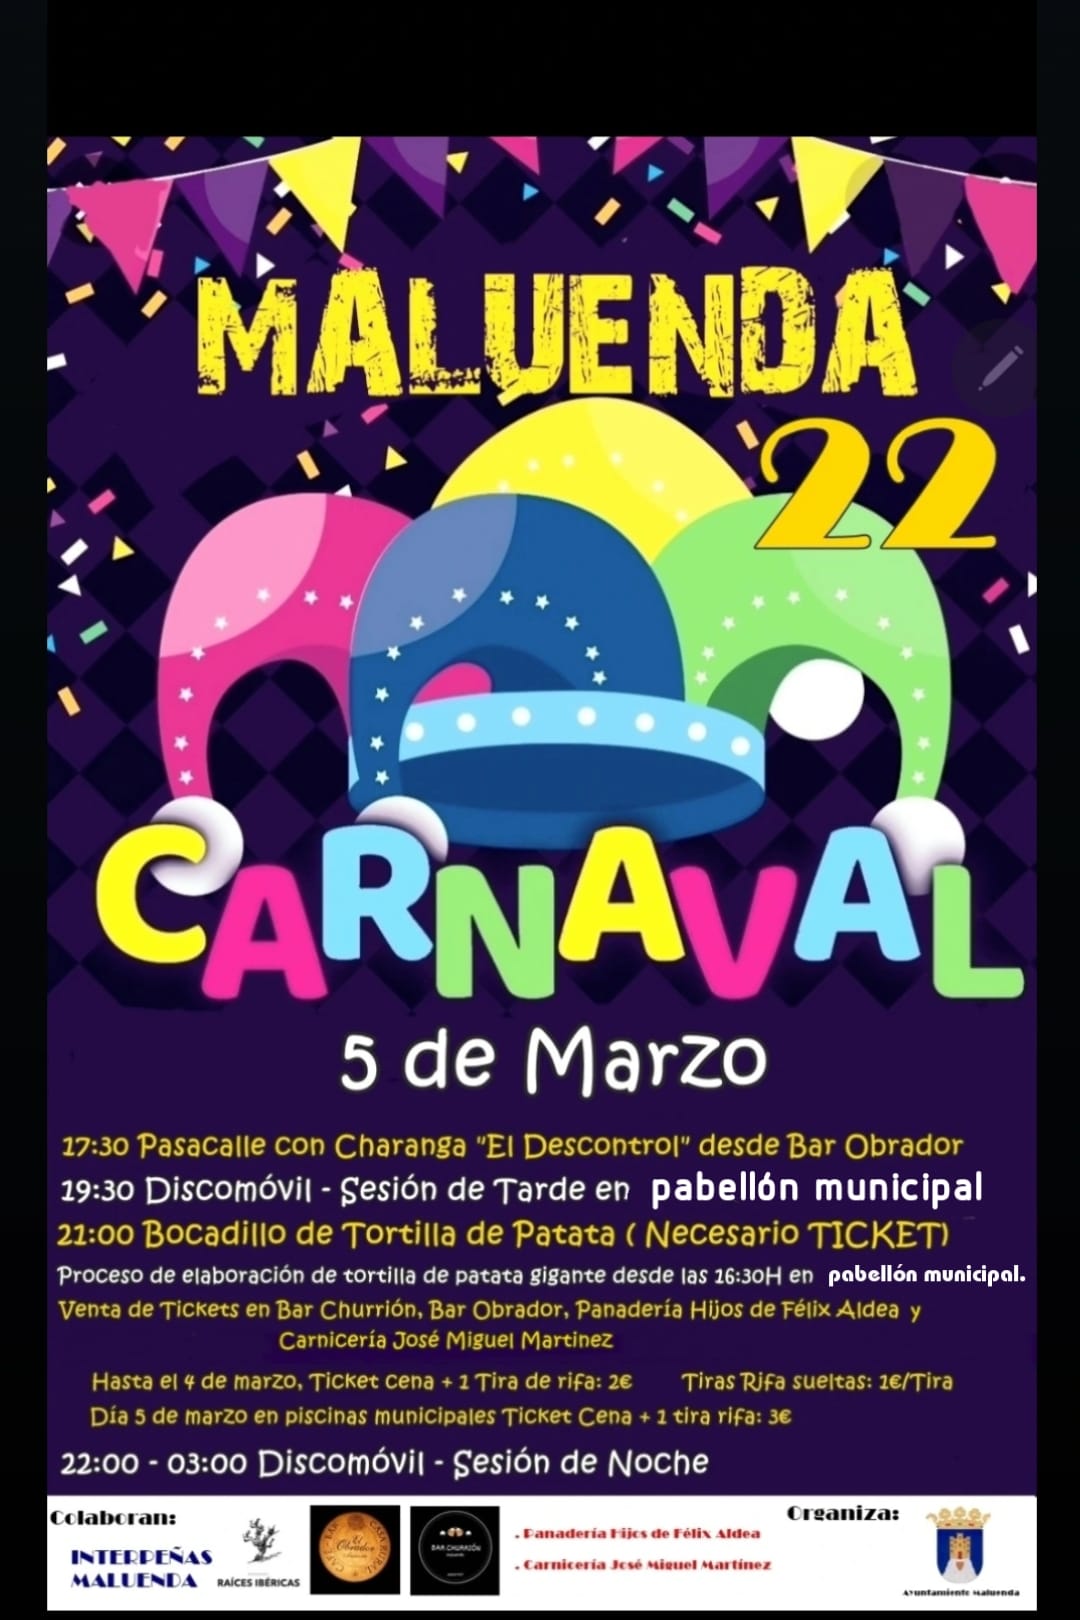 La fiesta de Carnaval se traslada al Pabellón Municipal